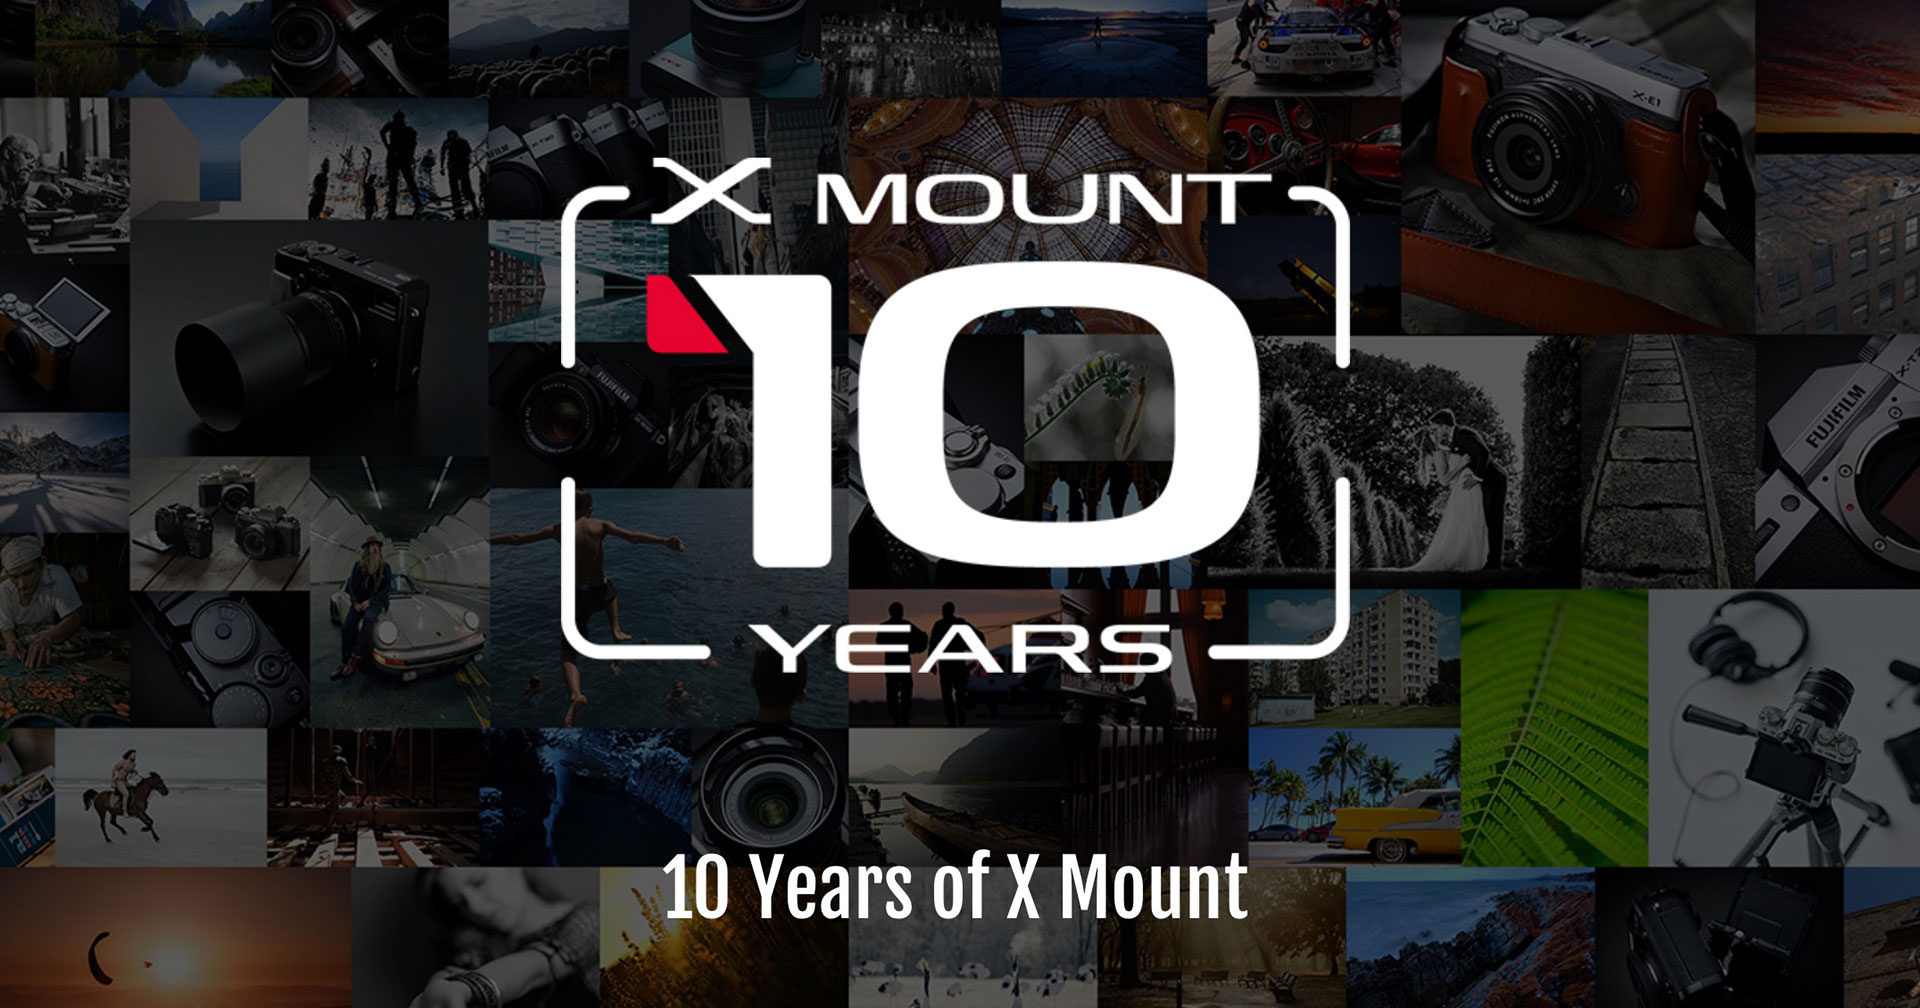 Fujifilm ยืนยัน! เตรียมเปิดตัวกล้อง X-mount รุ่นใหม่ ในงาน X Summit พ.ค. 2022